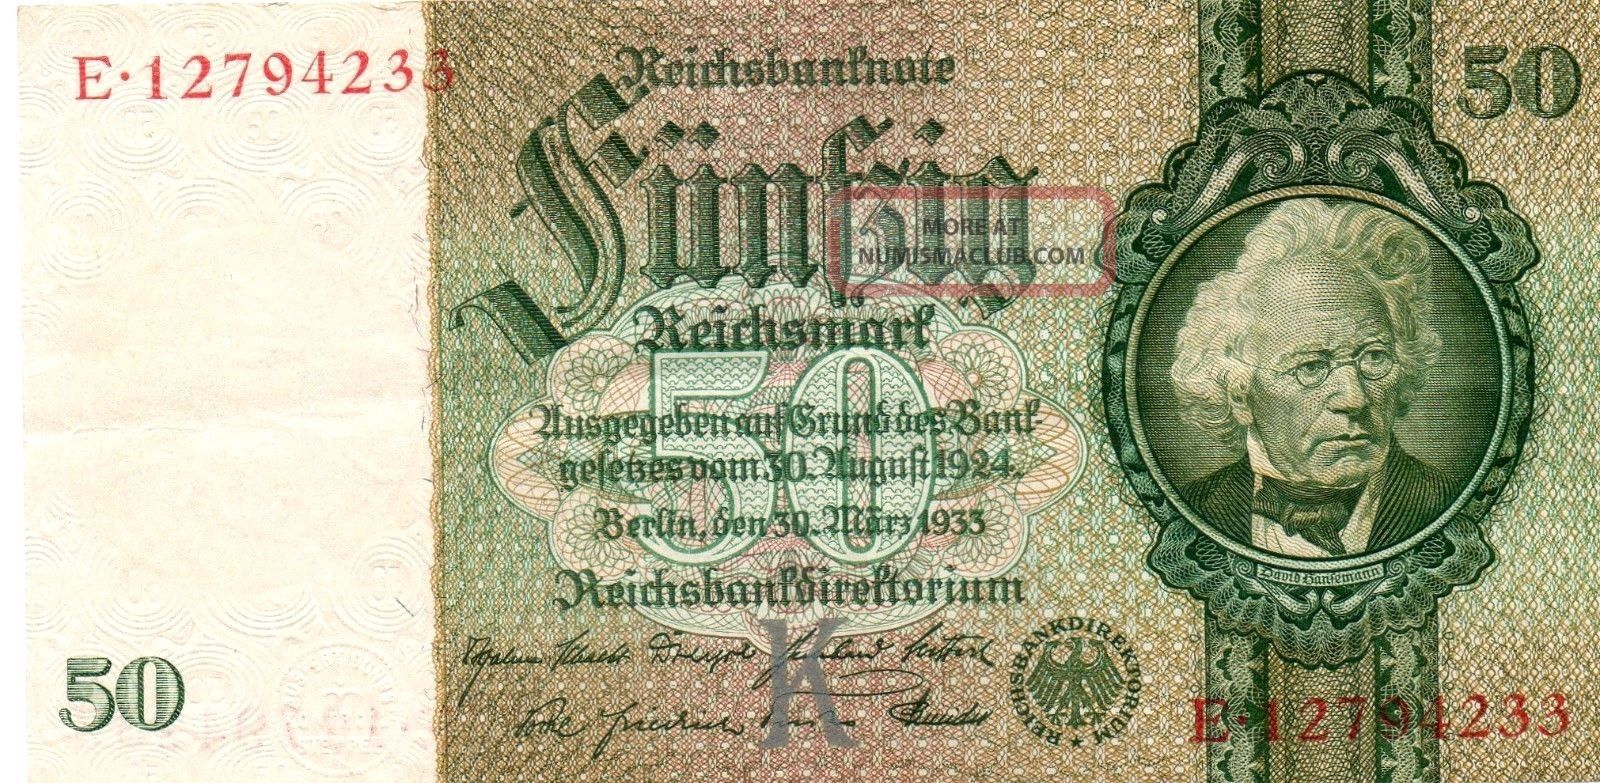 Xxx - Rare 50 Reichsmark Third Reich Nazi Banknote 1933 Very Good Co Europe photo